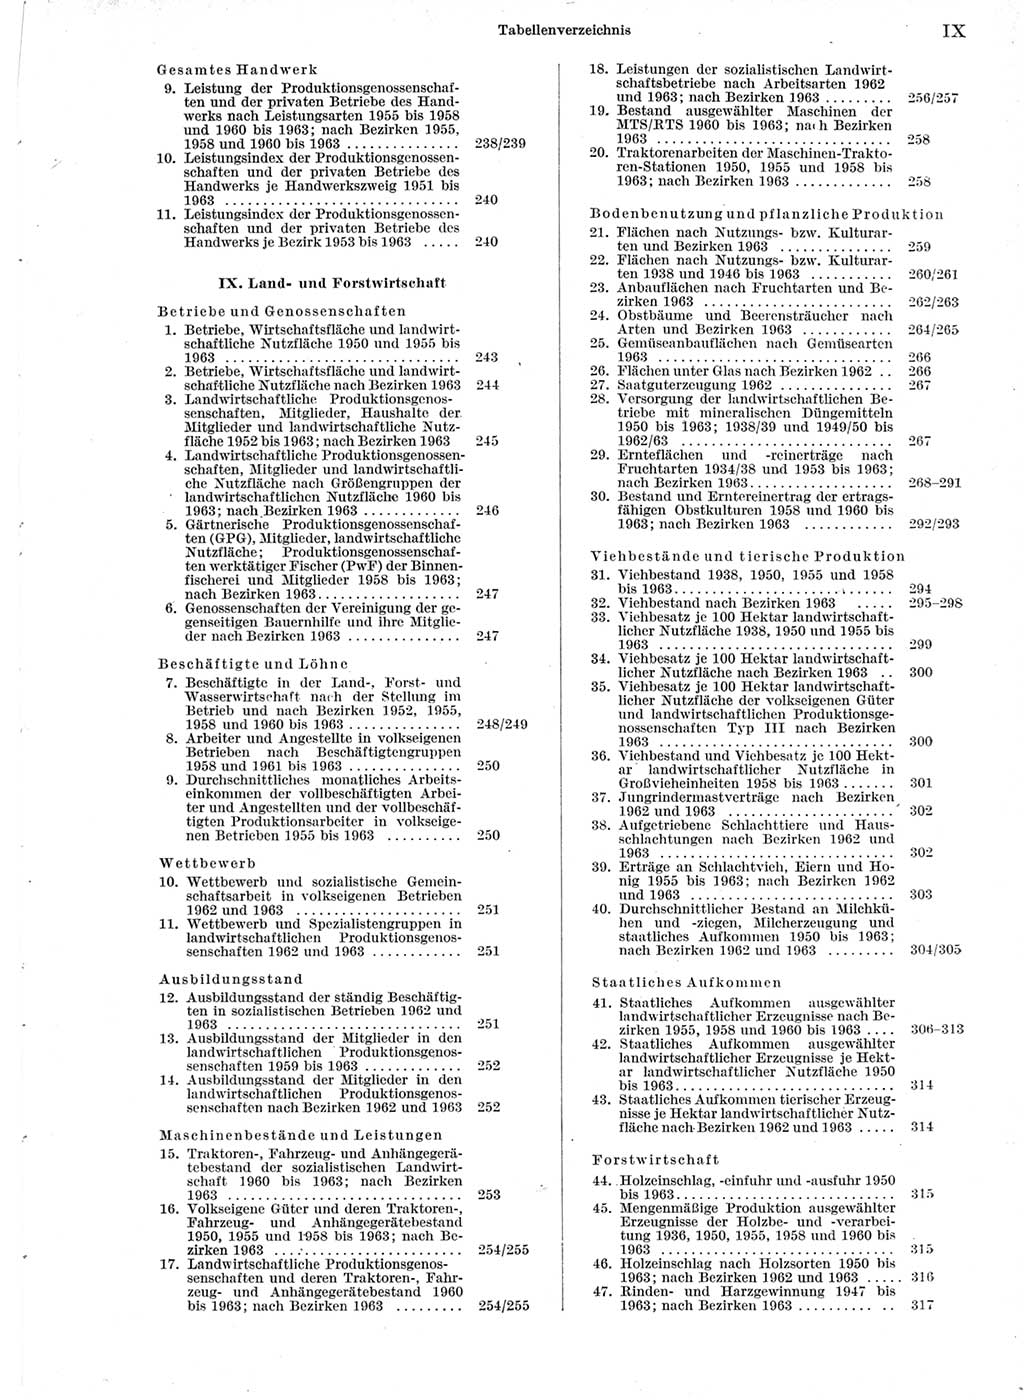 Statistisches Jahrbuch der Deutschen Demokratischen Republik (DDR) 1964, Seite 9 (Stat. Jb. DDR 1964, S. 9)